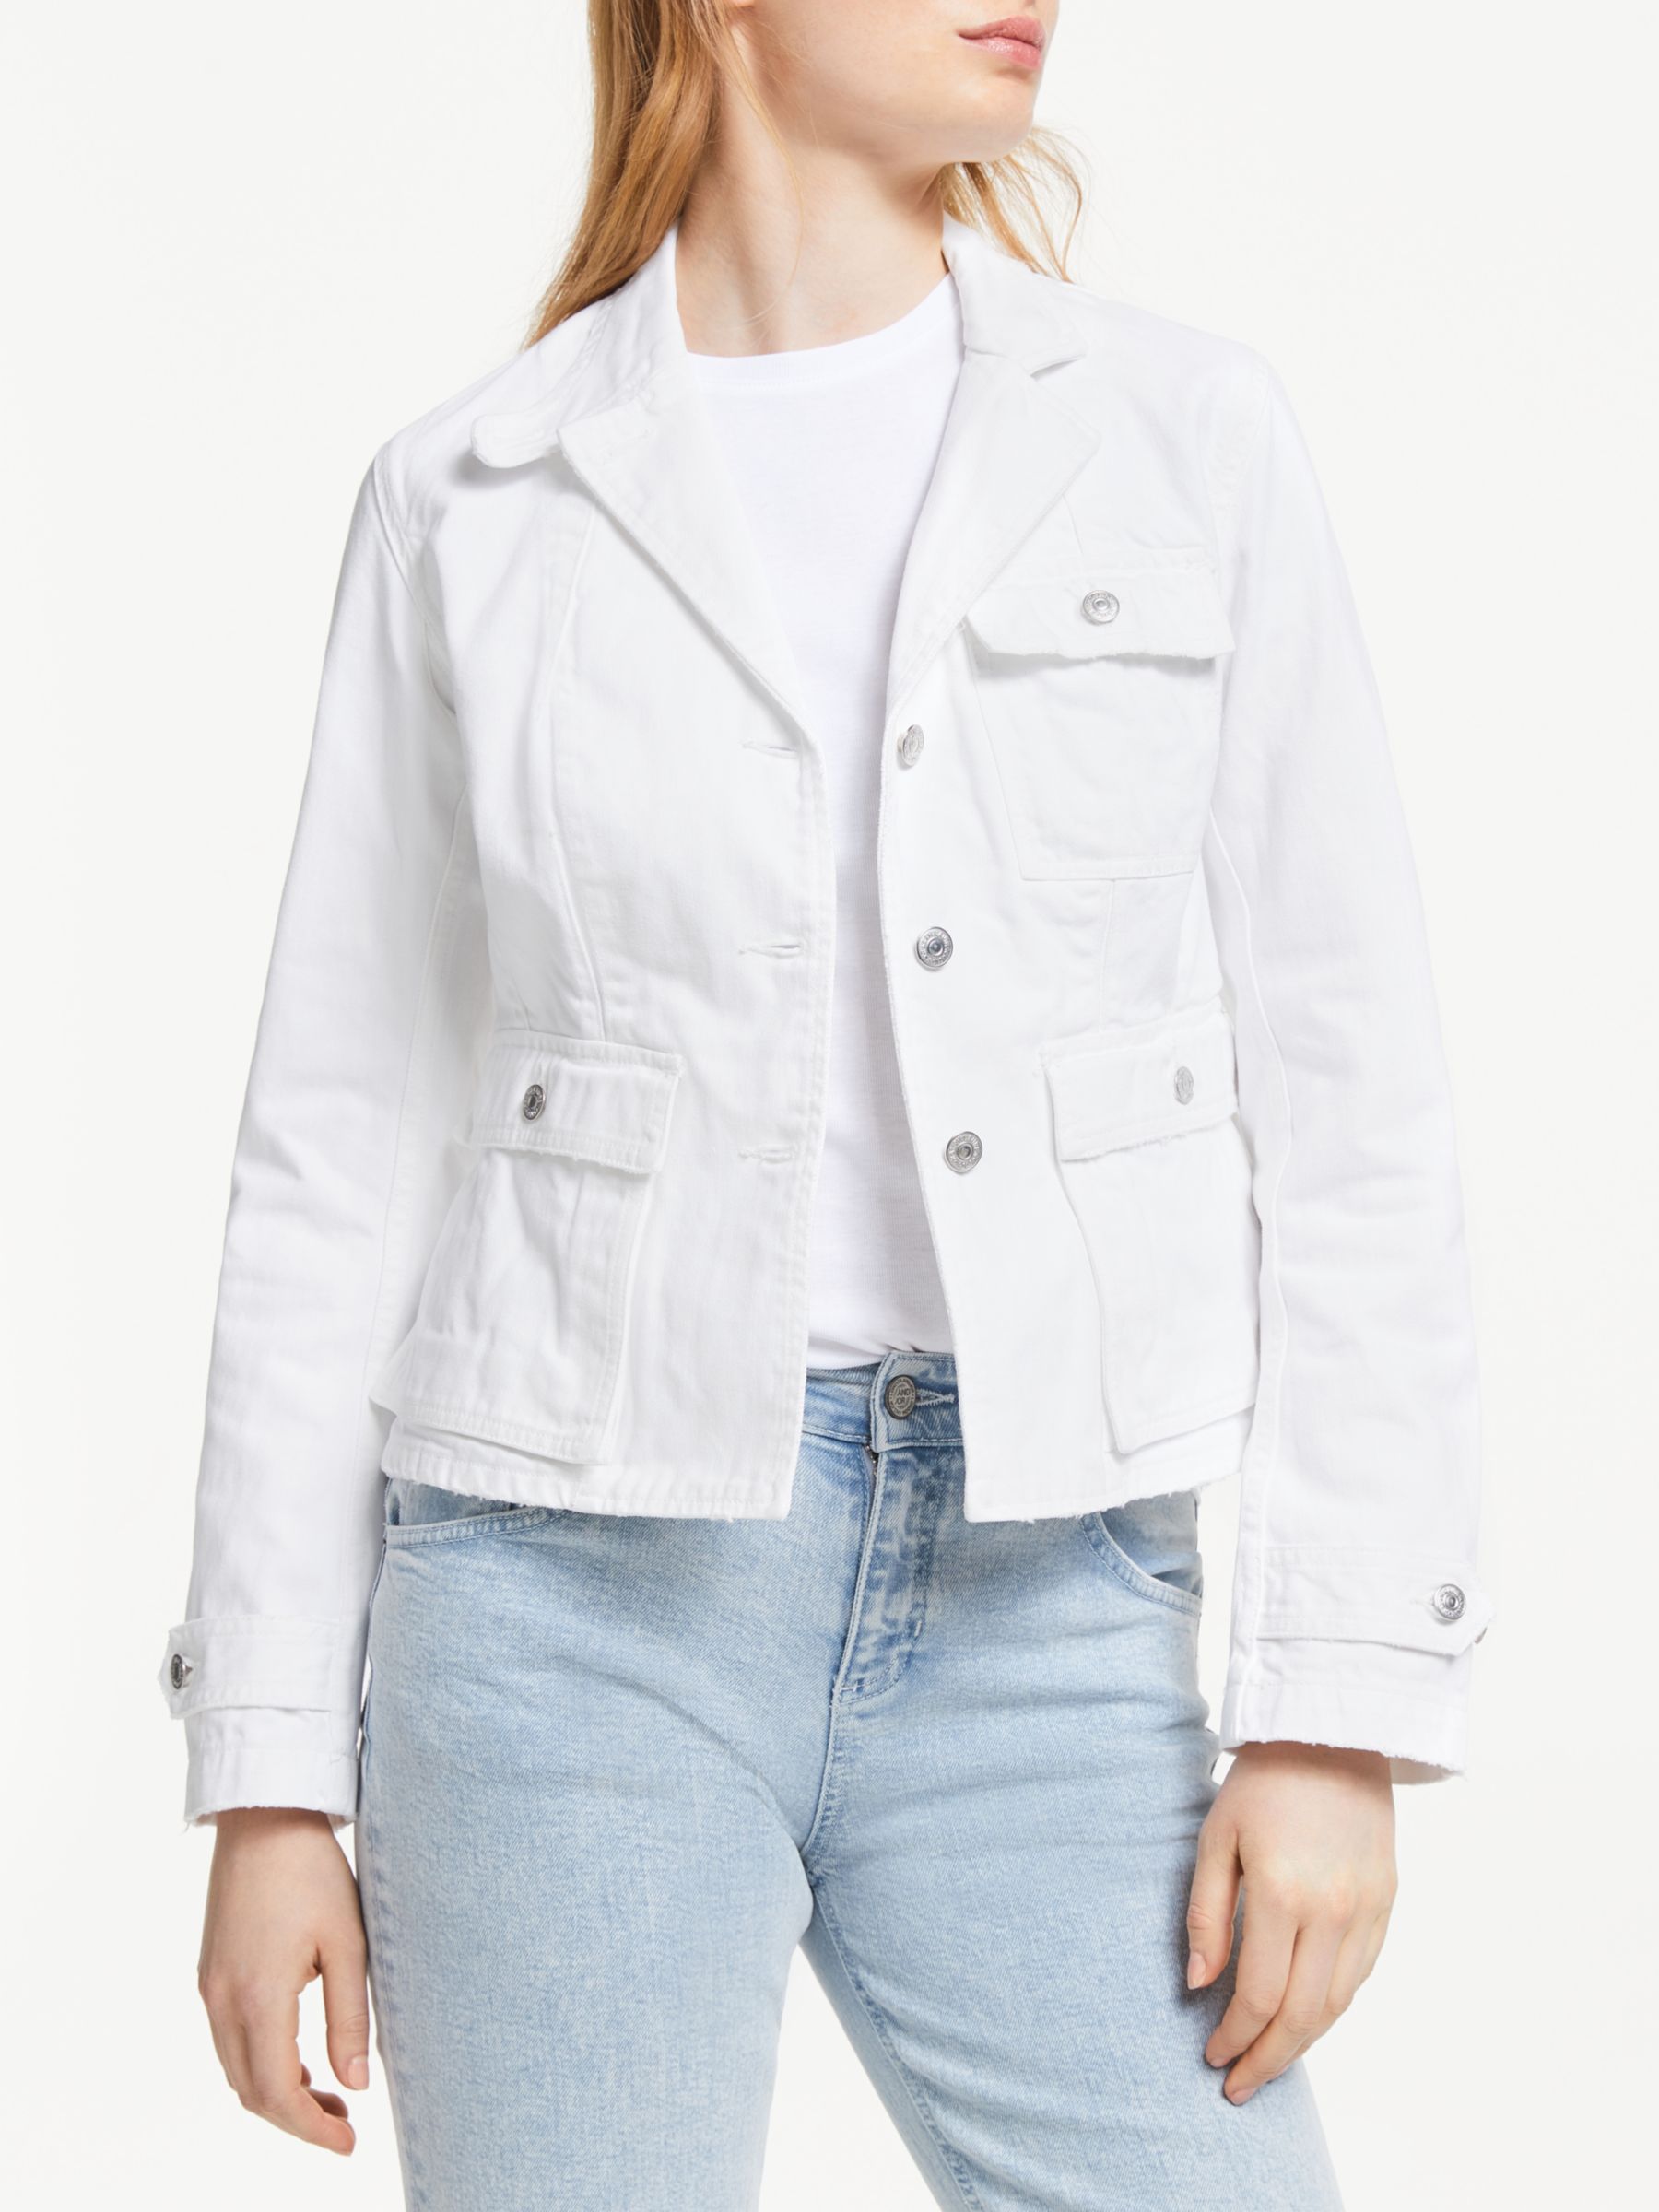 polo white denim jacket